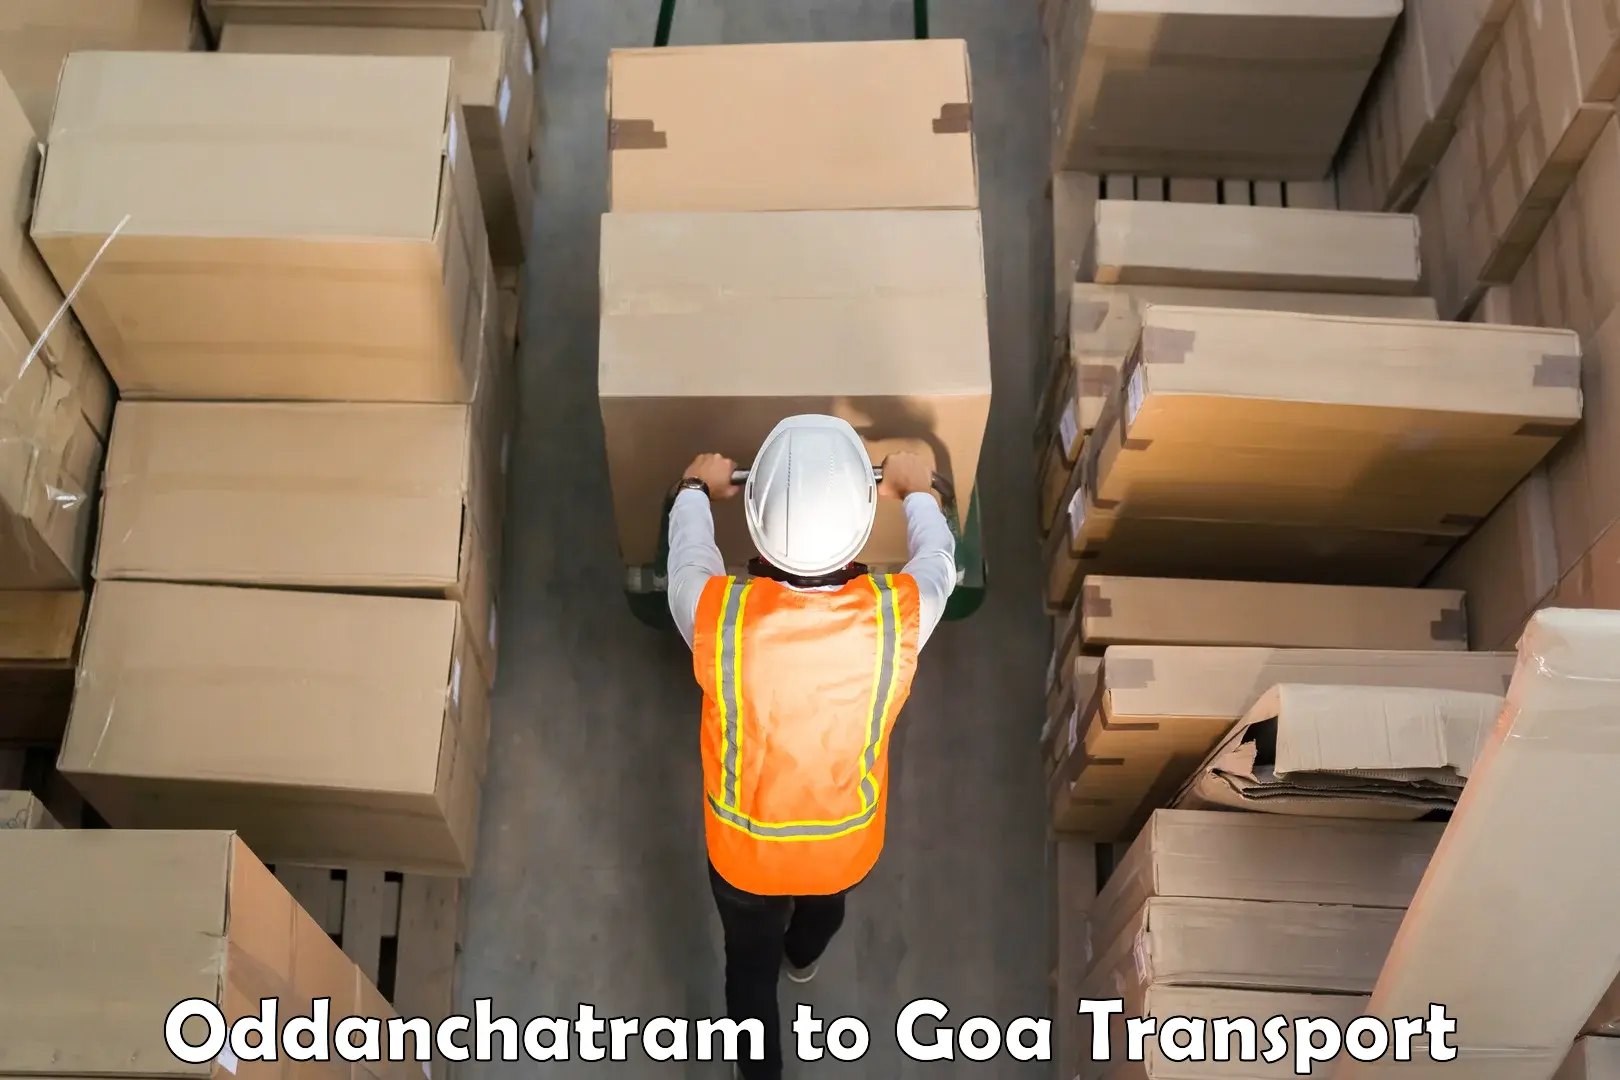 Cargo transport services Oddanchatram to Vasco da Gama